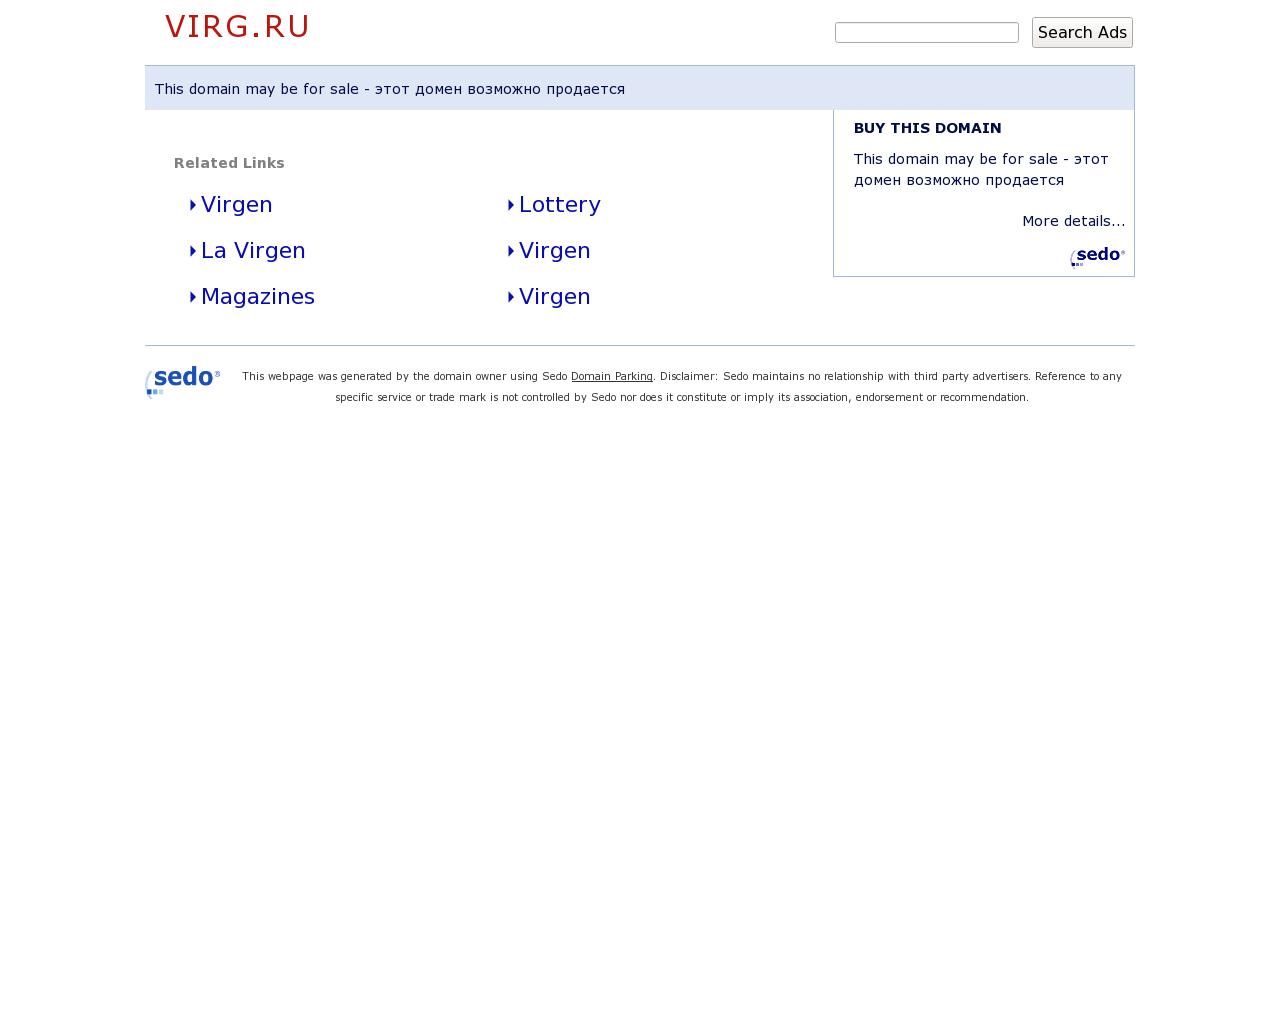 Изображение сайта virg.ru в разрешении 1280x1024